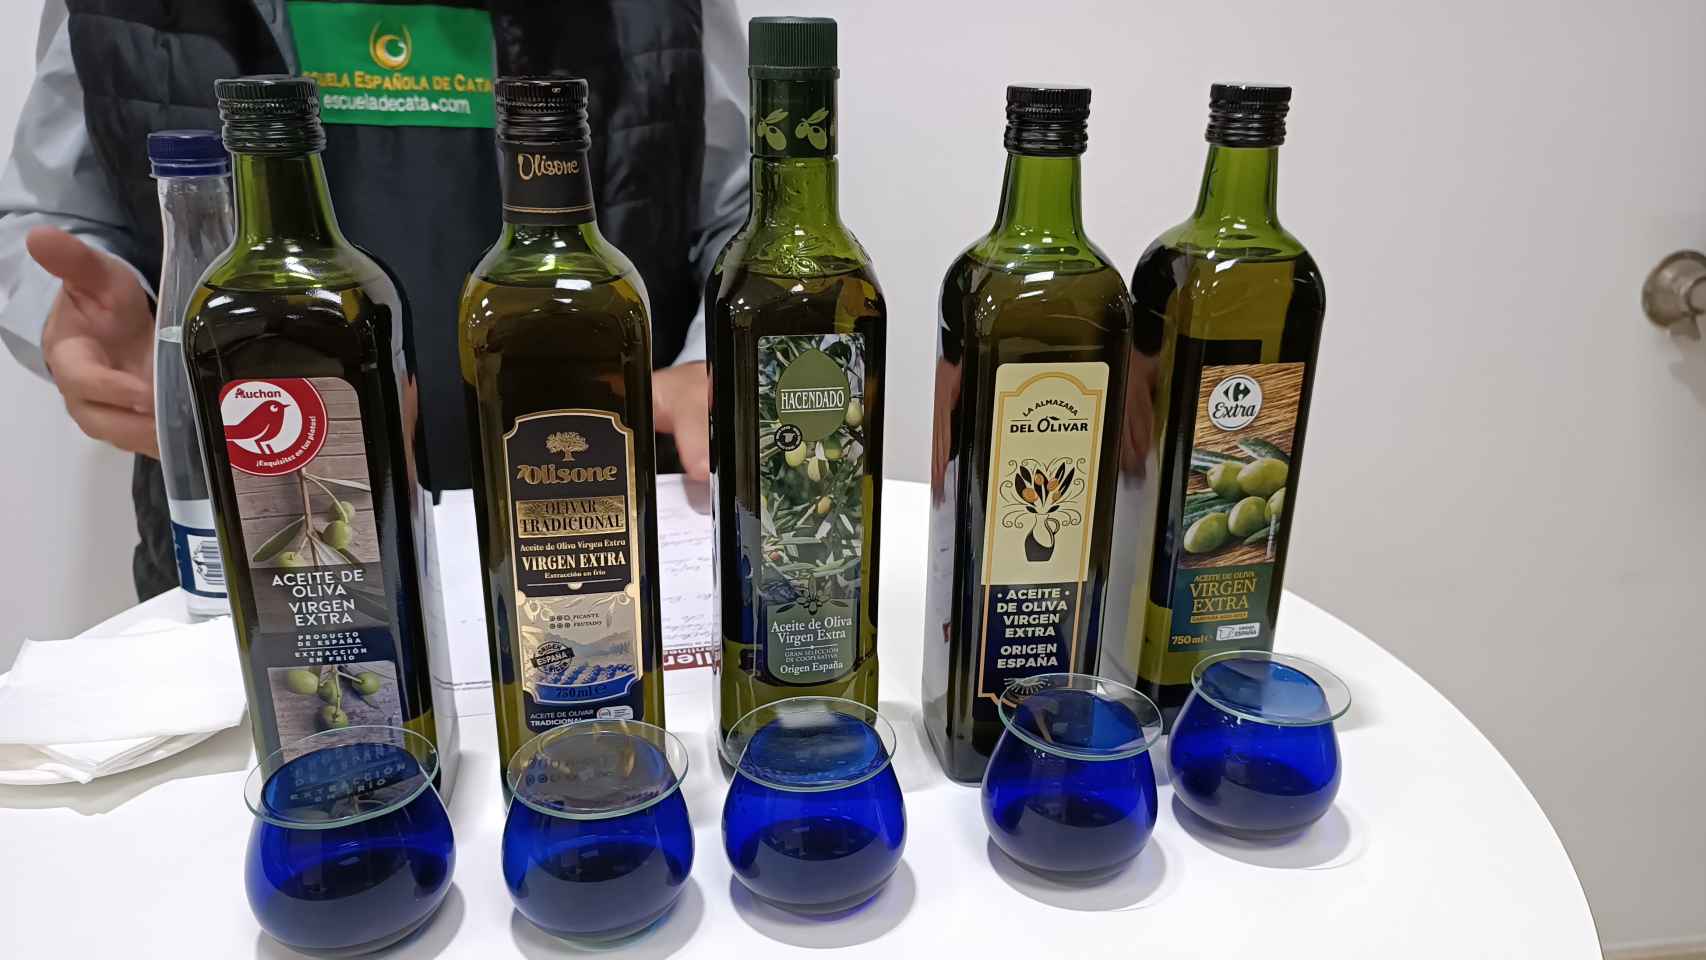 Los cinco aceites de oliva virgen extra, tras concluir la cata.